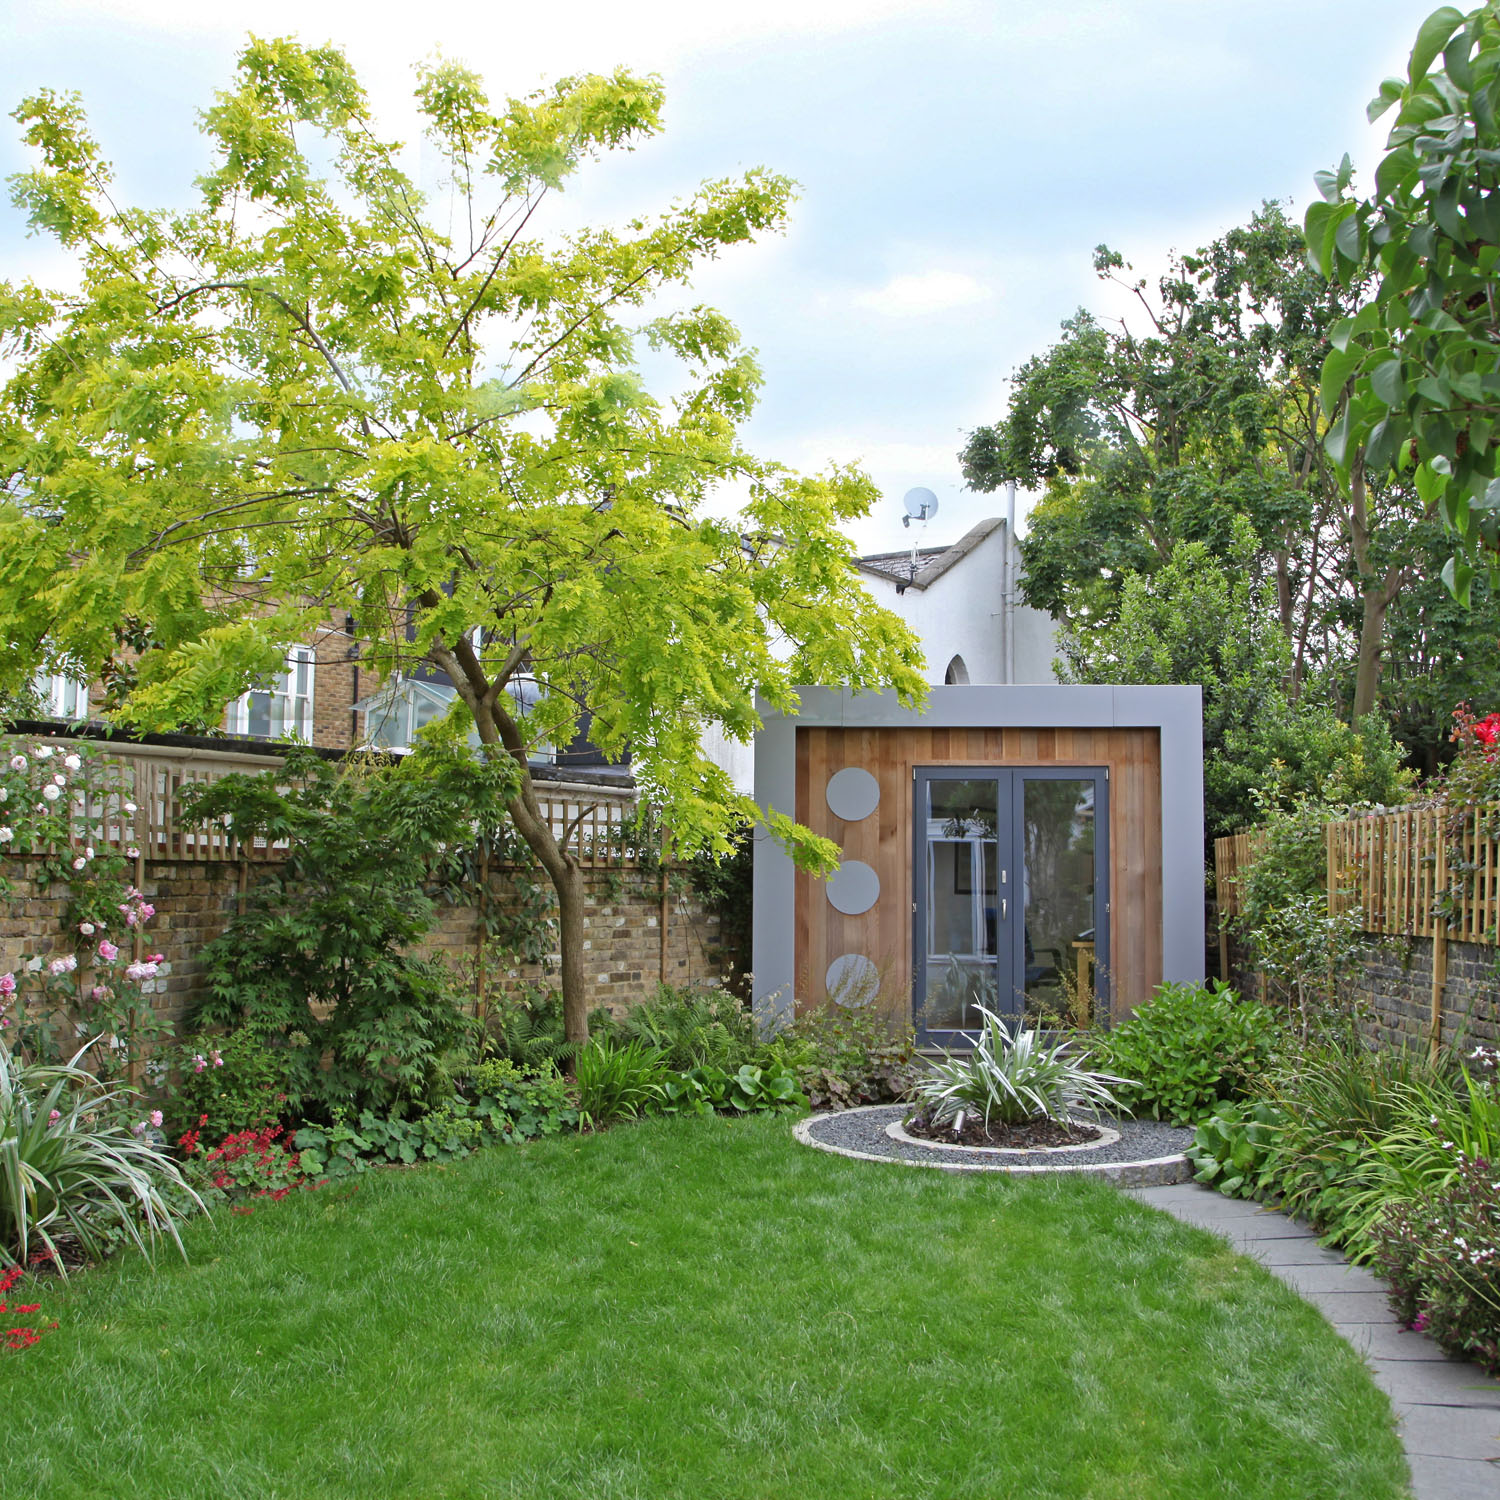  modern cottage garden design